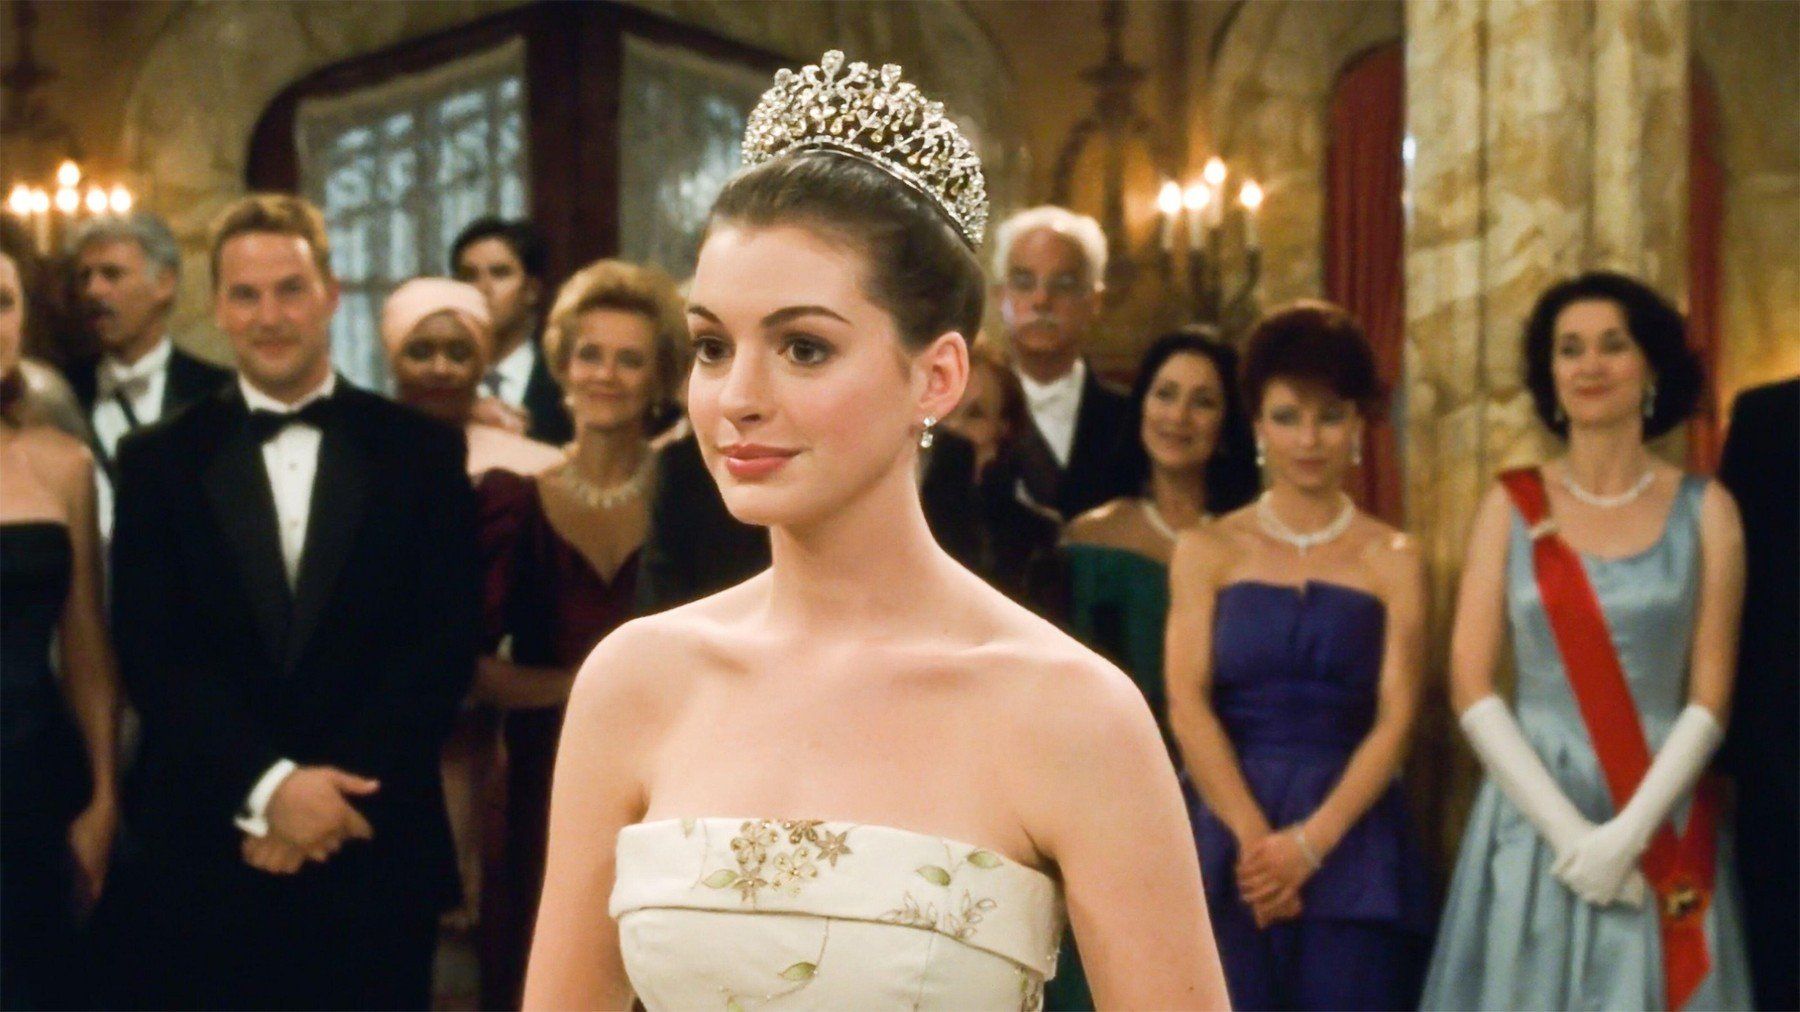 Anne Hathaway a Neveletlen hercegnő című 2001-es filmben